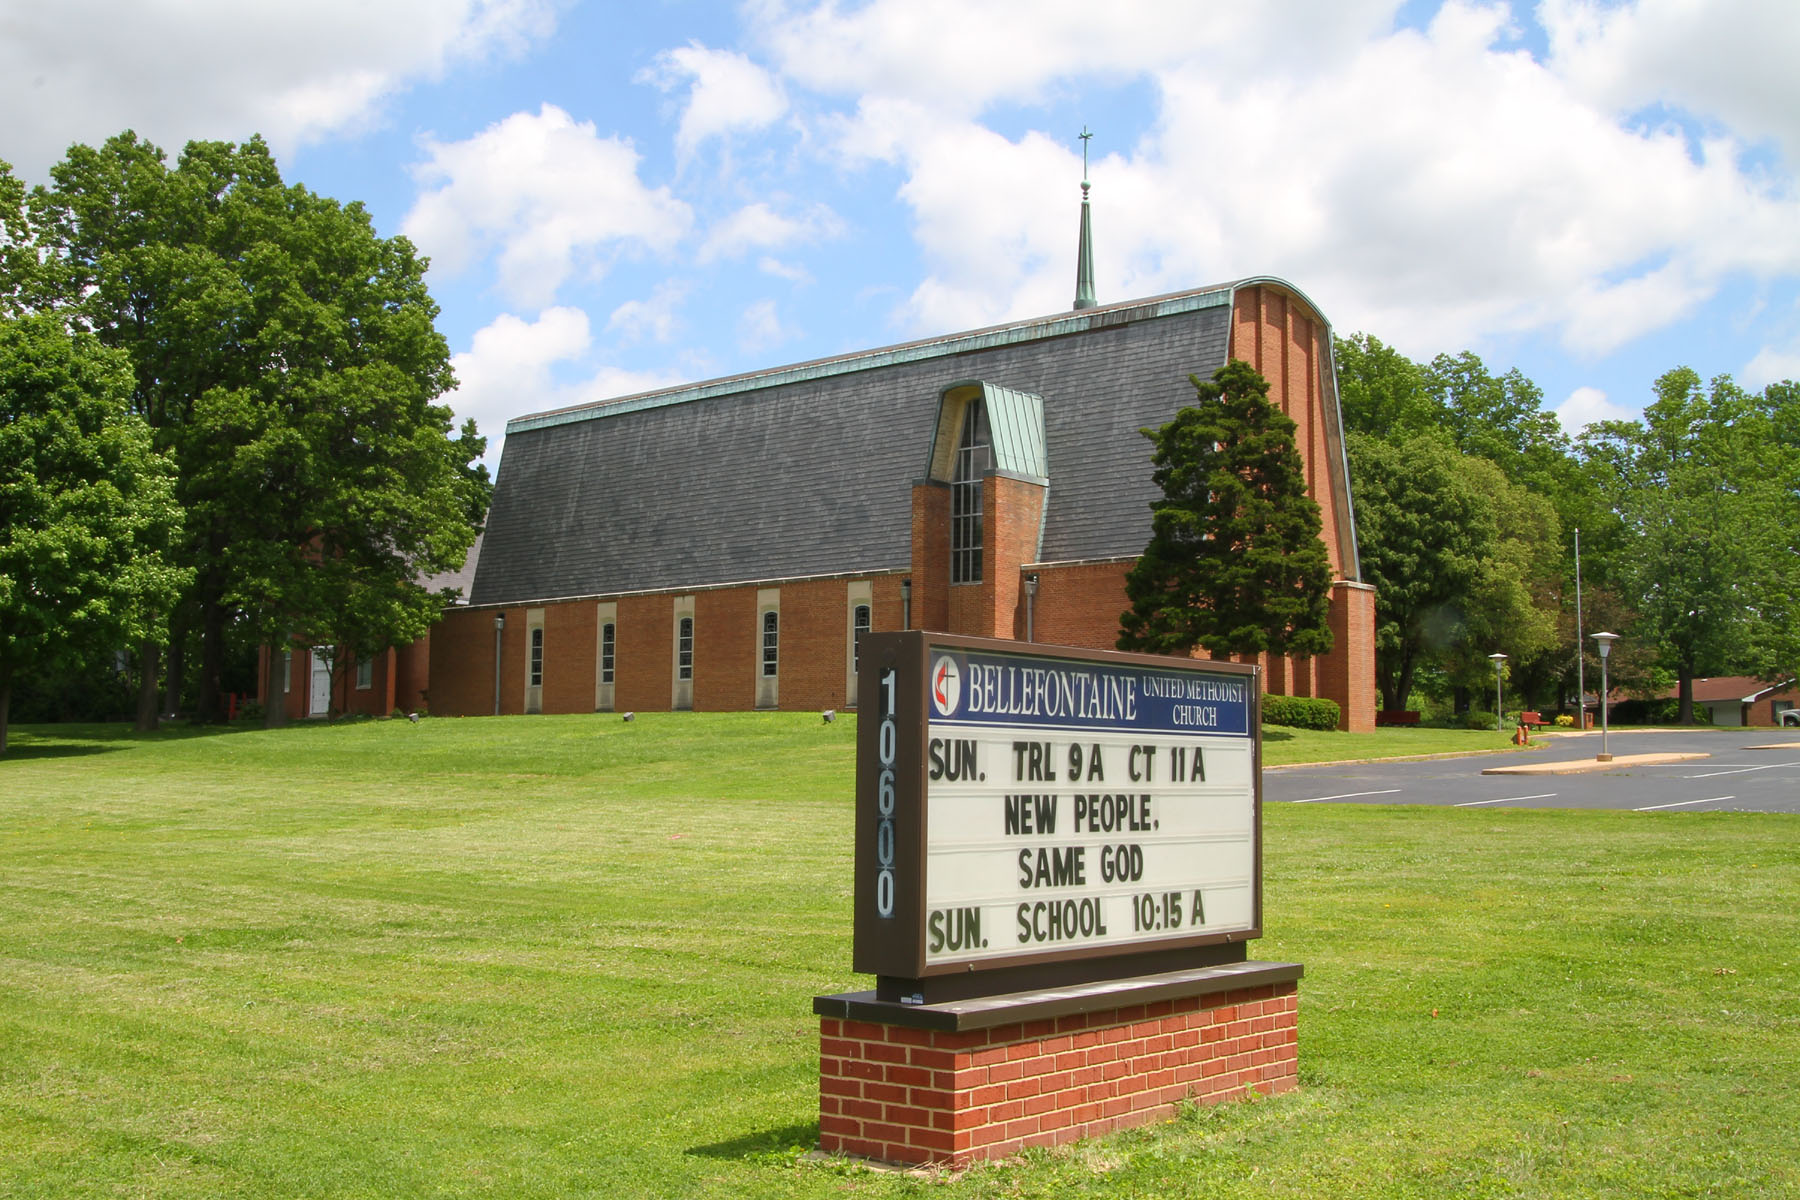 Bellefontaine Methodist Episcopal